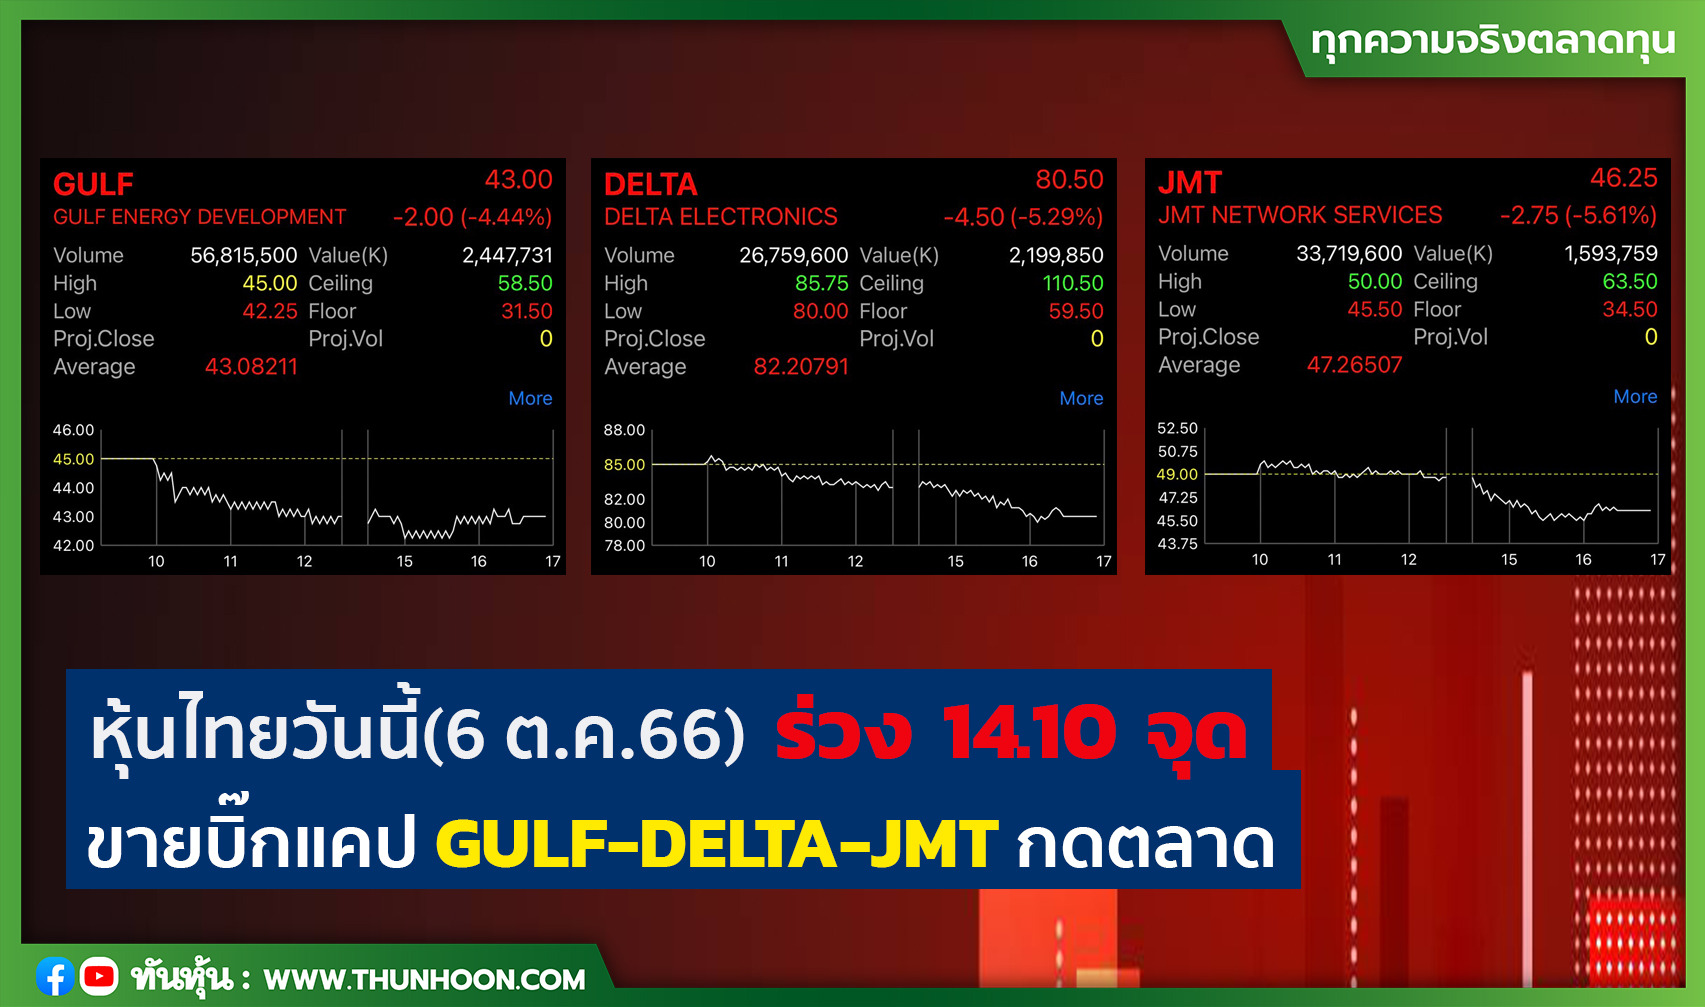 หุ้นไทยวันนี้ (6 ต.ค. 66) ร่วง 14.10 จุด ขายบิ๊กแคป GULF-DELTA-JMT กดตลาด